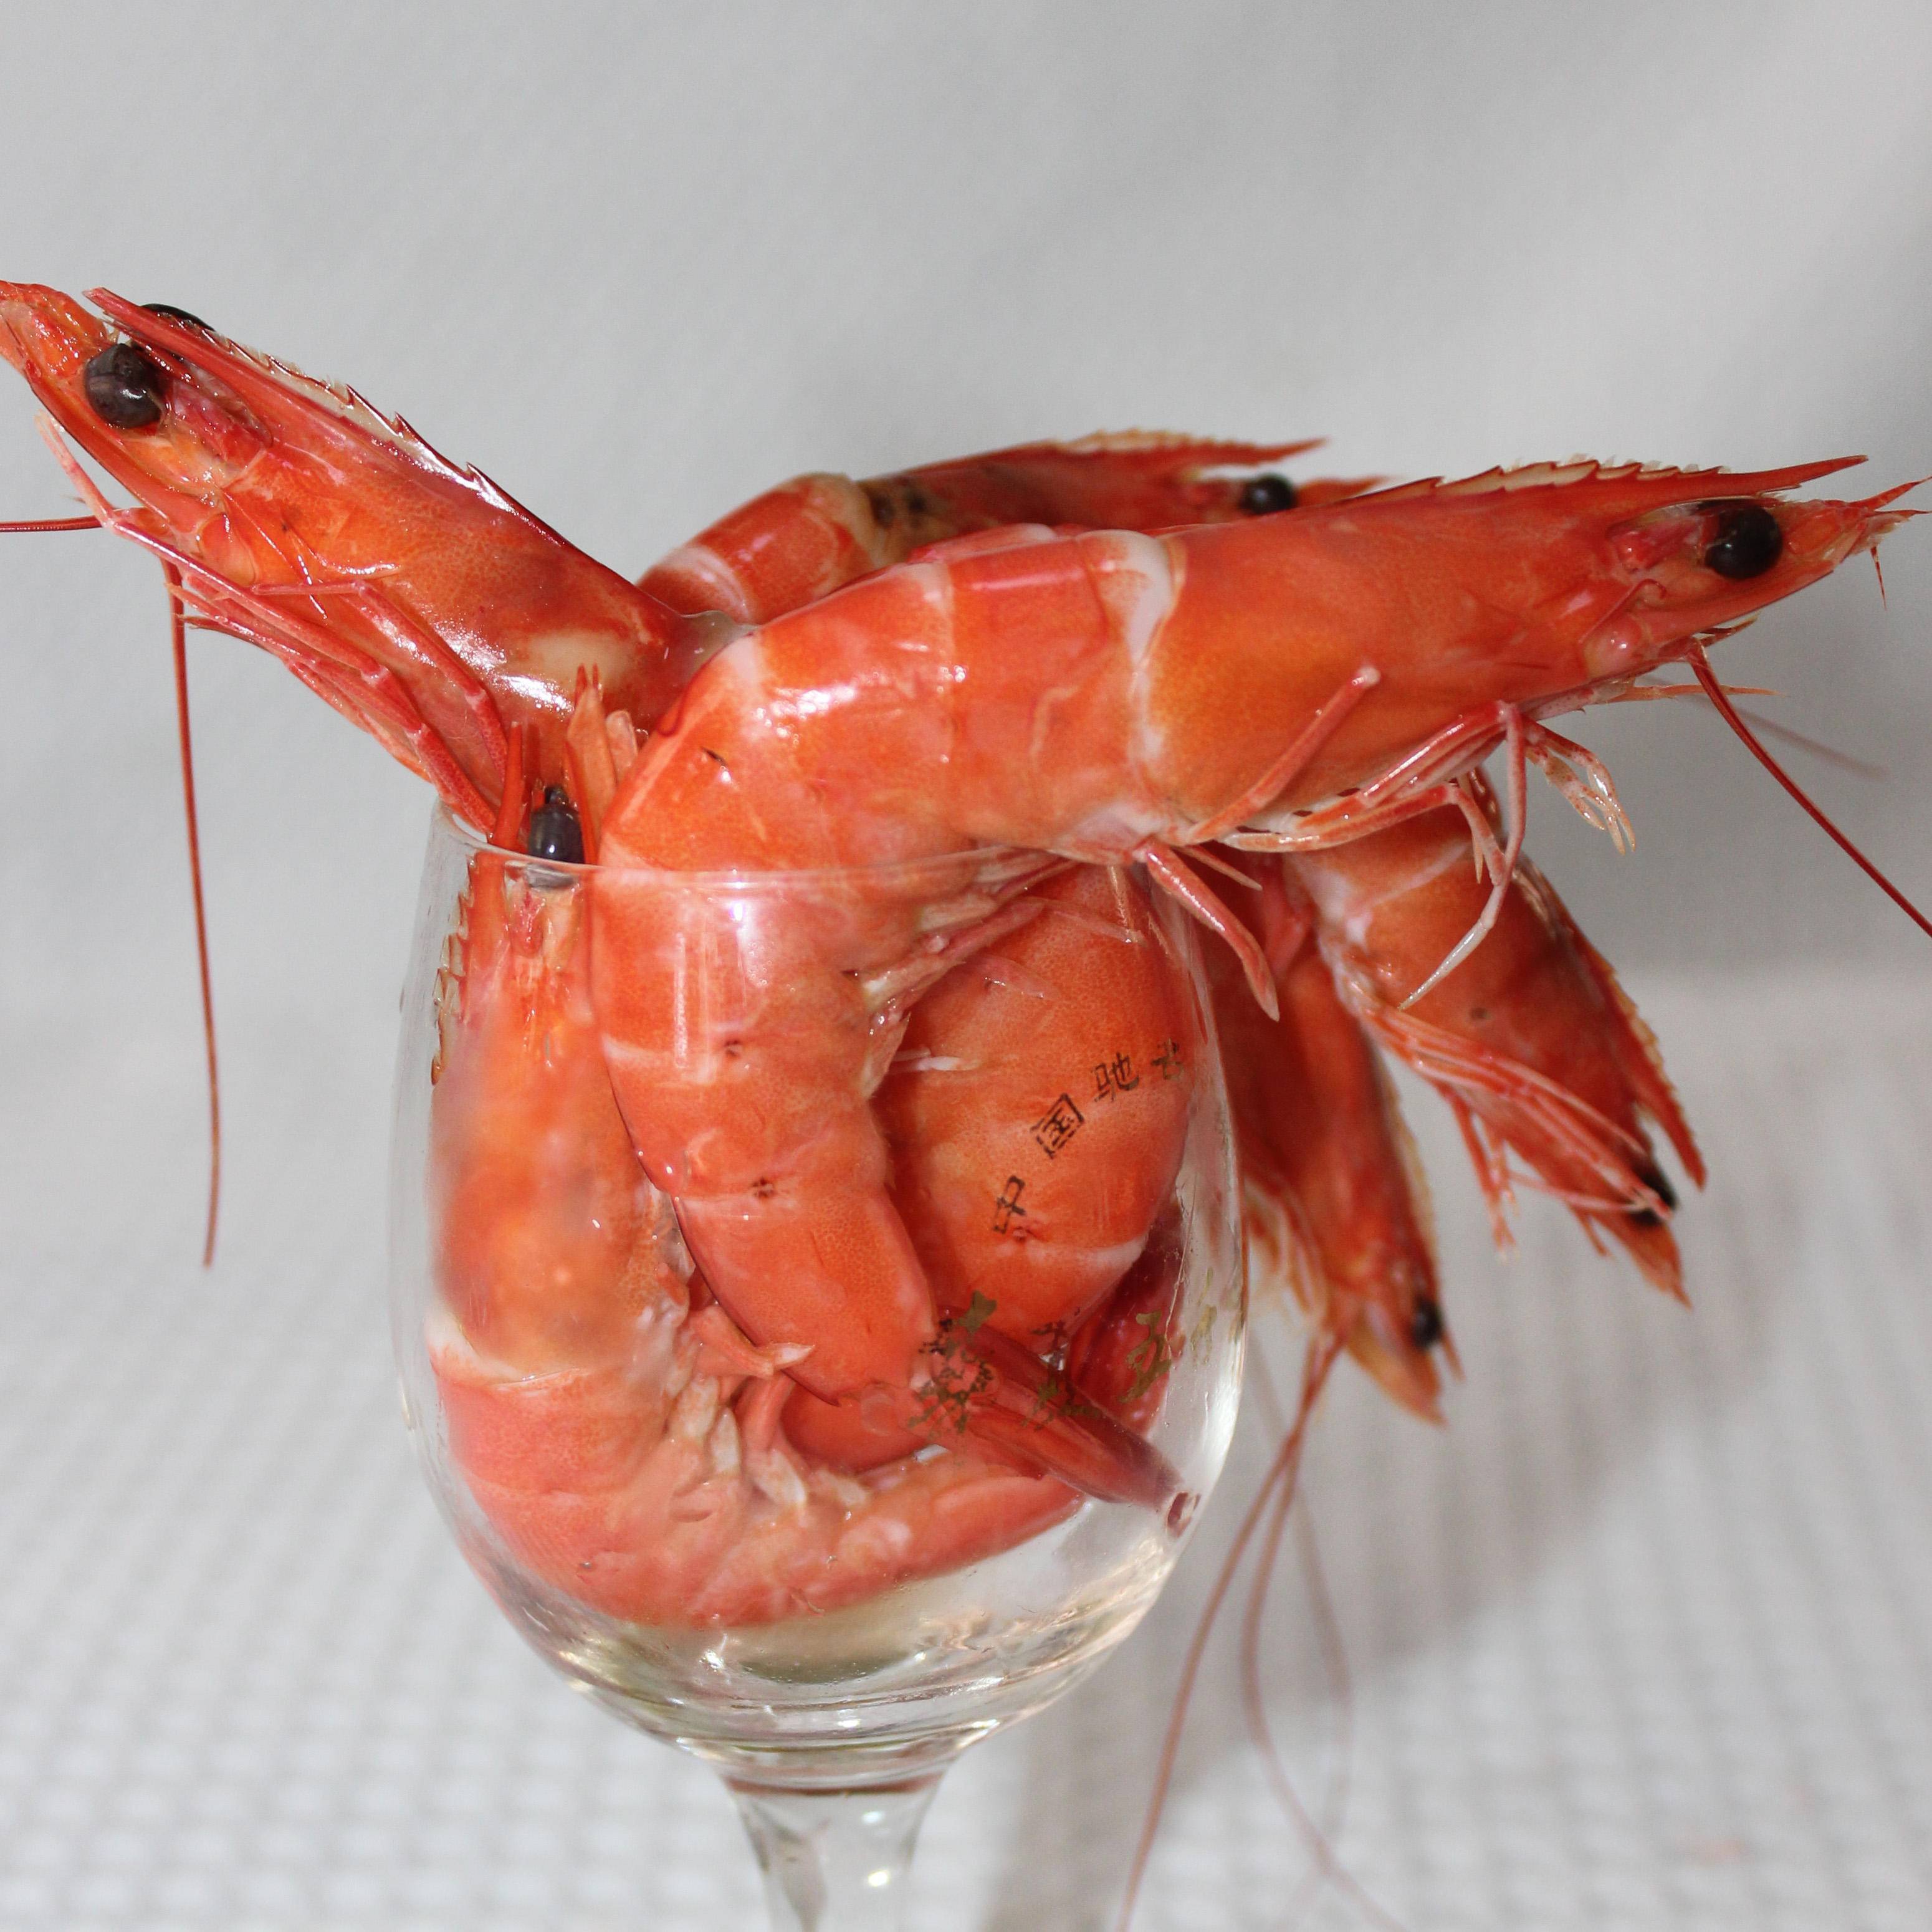 УЗВ для выращивания креветки Ваннамей (Система Биофлок). Equipment for growing shrimp Vannamei.